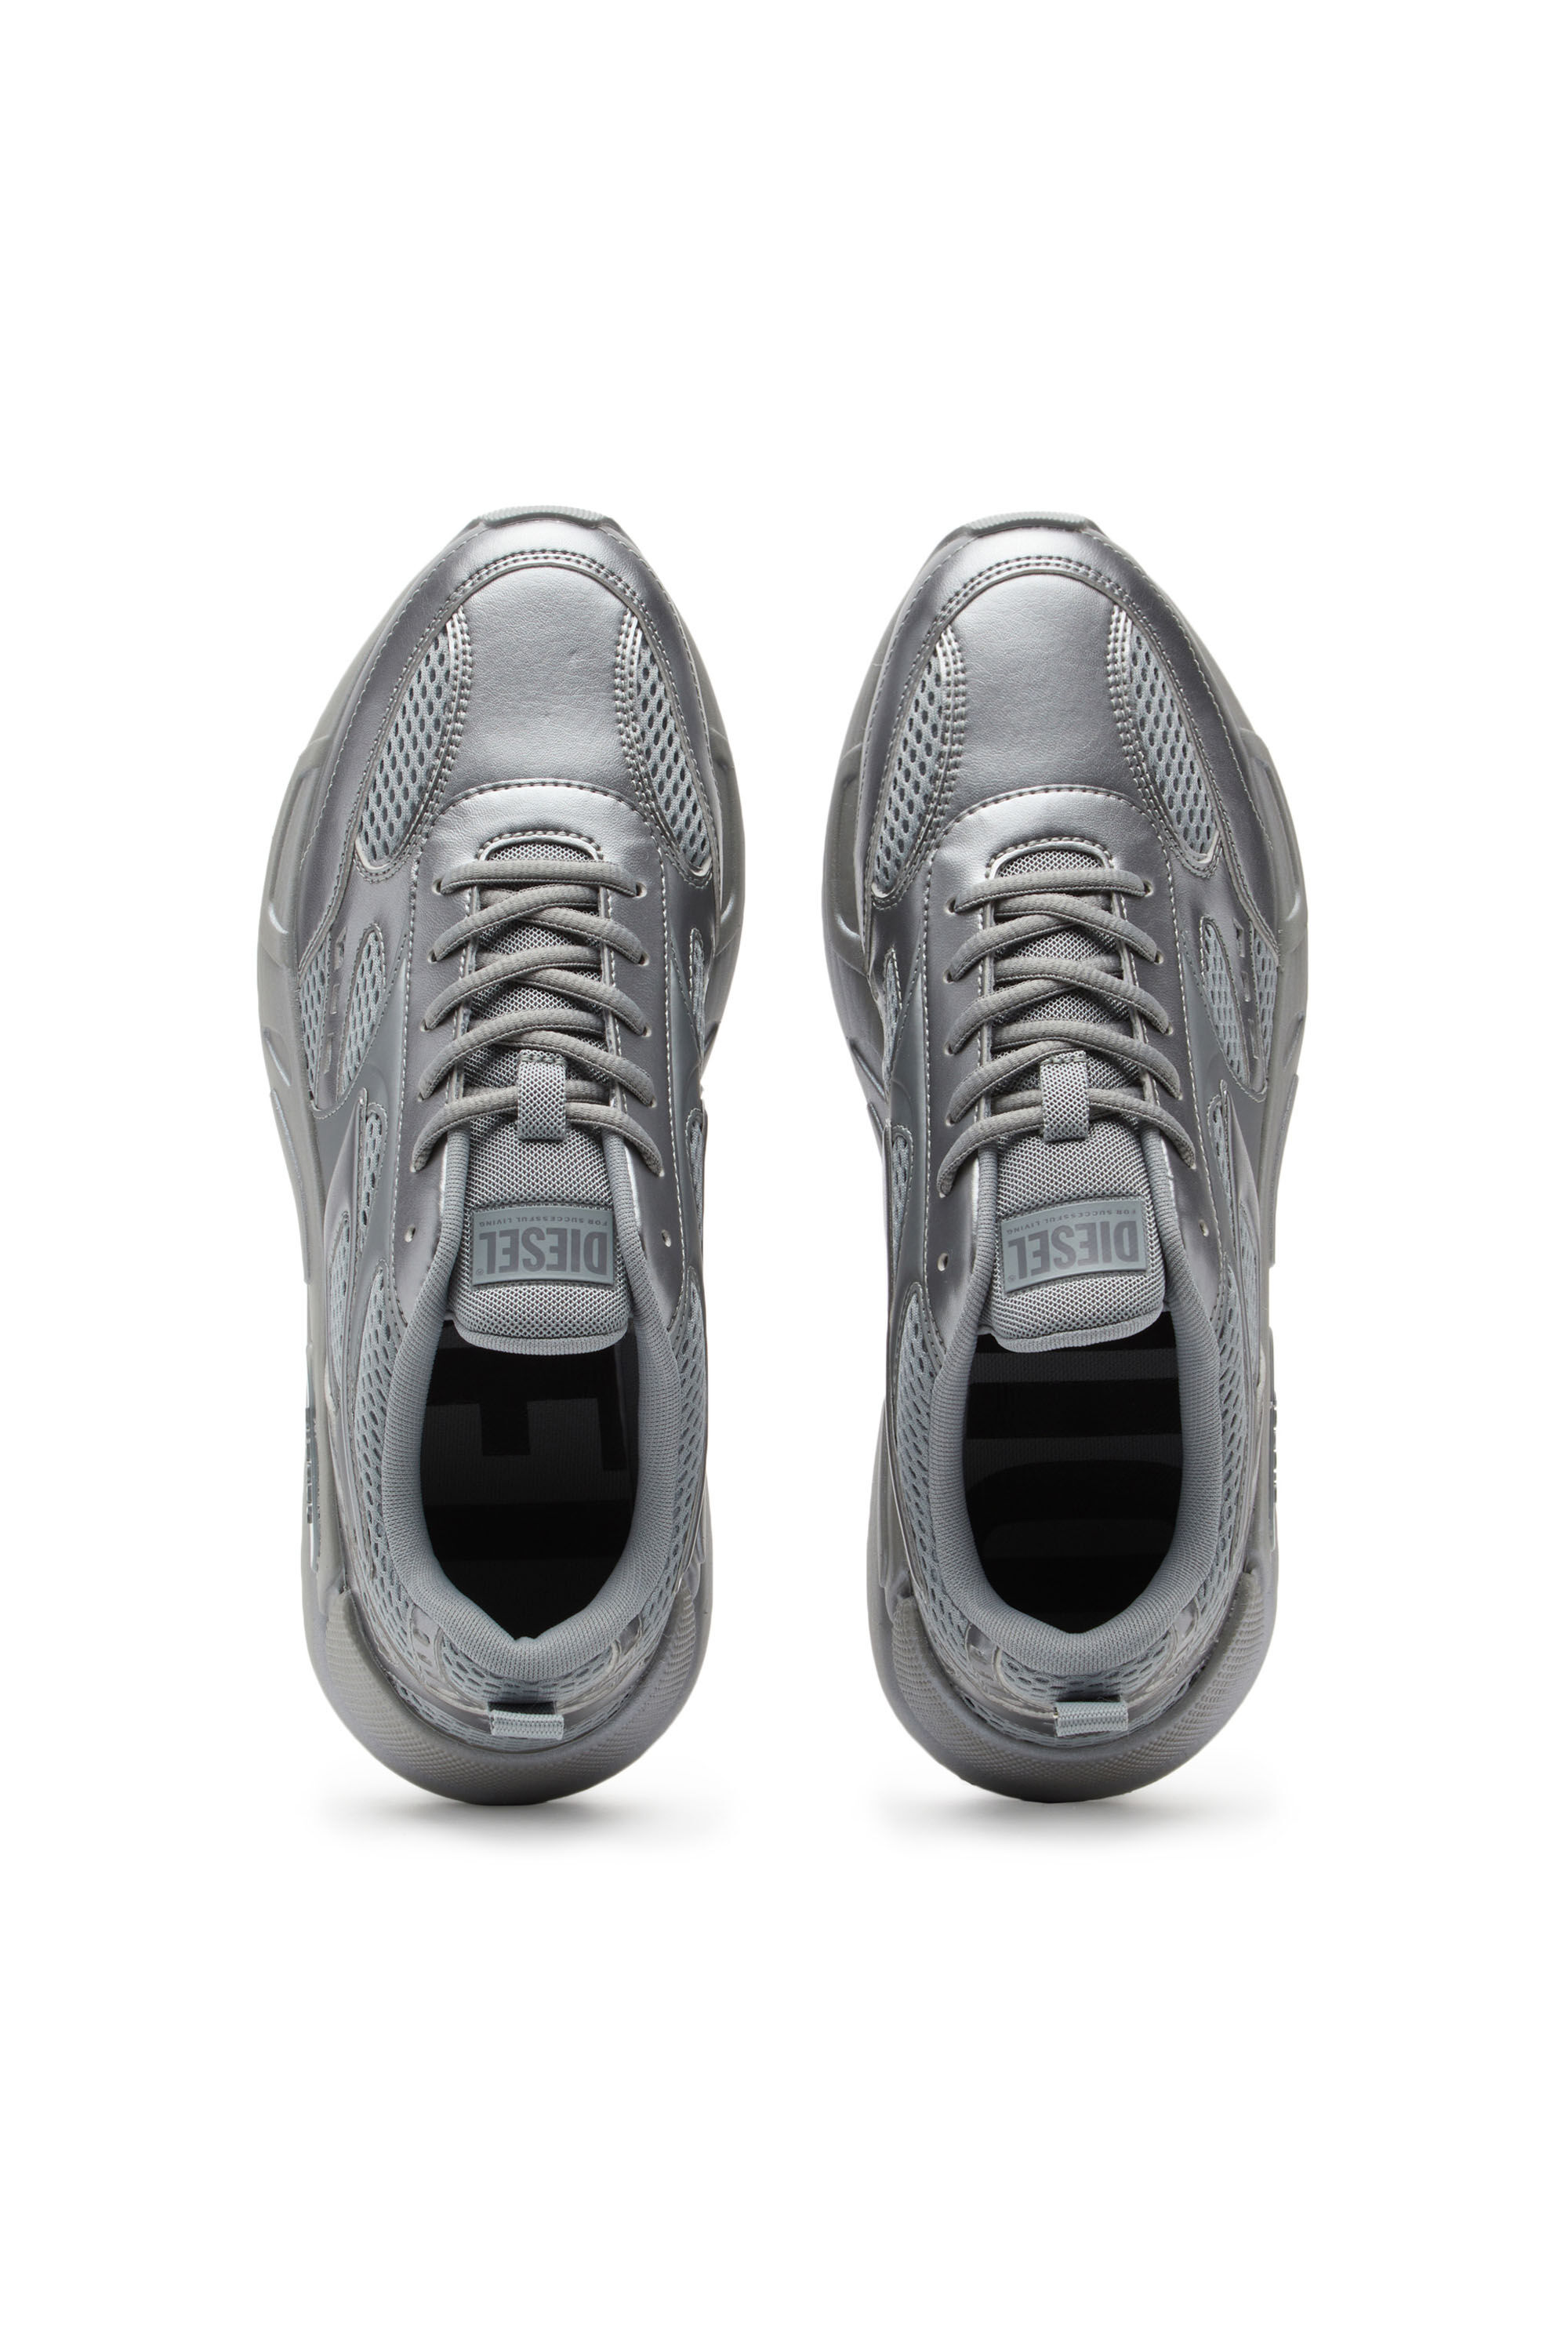 S-SERENDIPITY SPORT Man: Monochrome pearlised mesh sneakers | Diesel